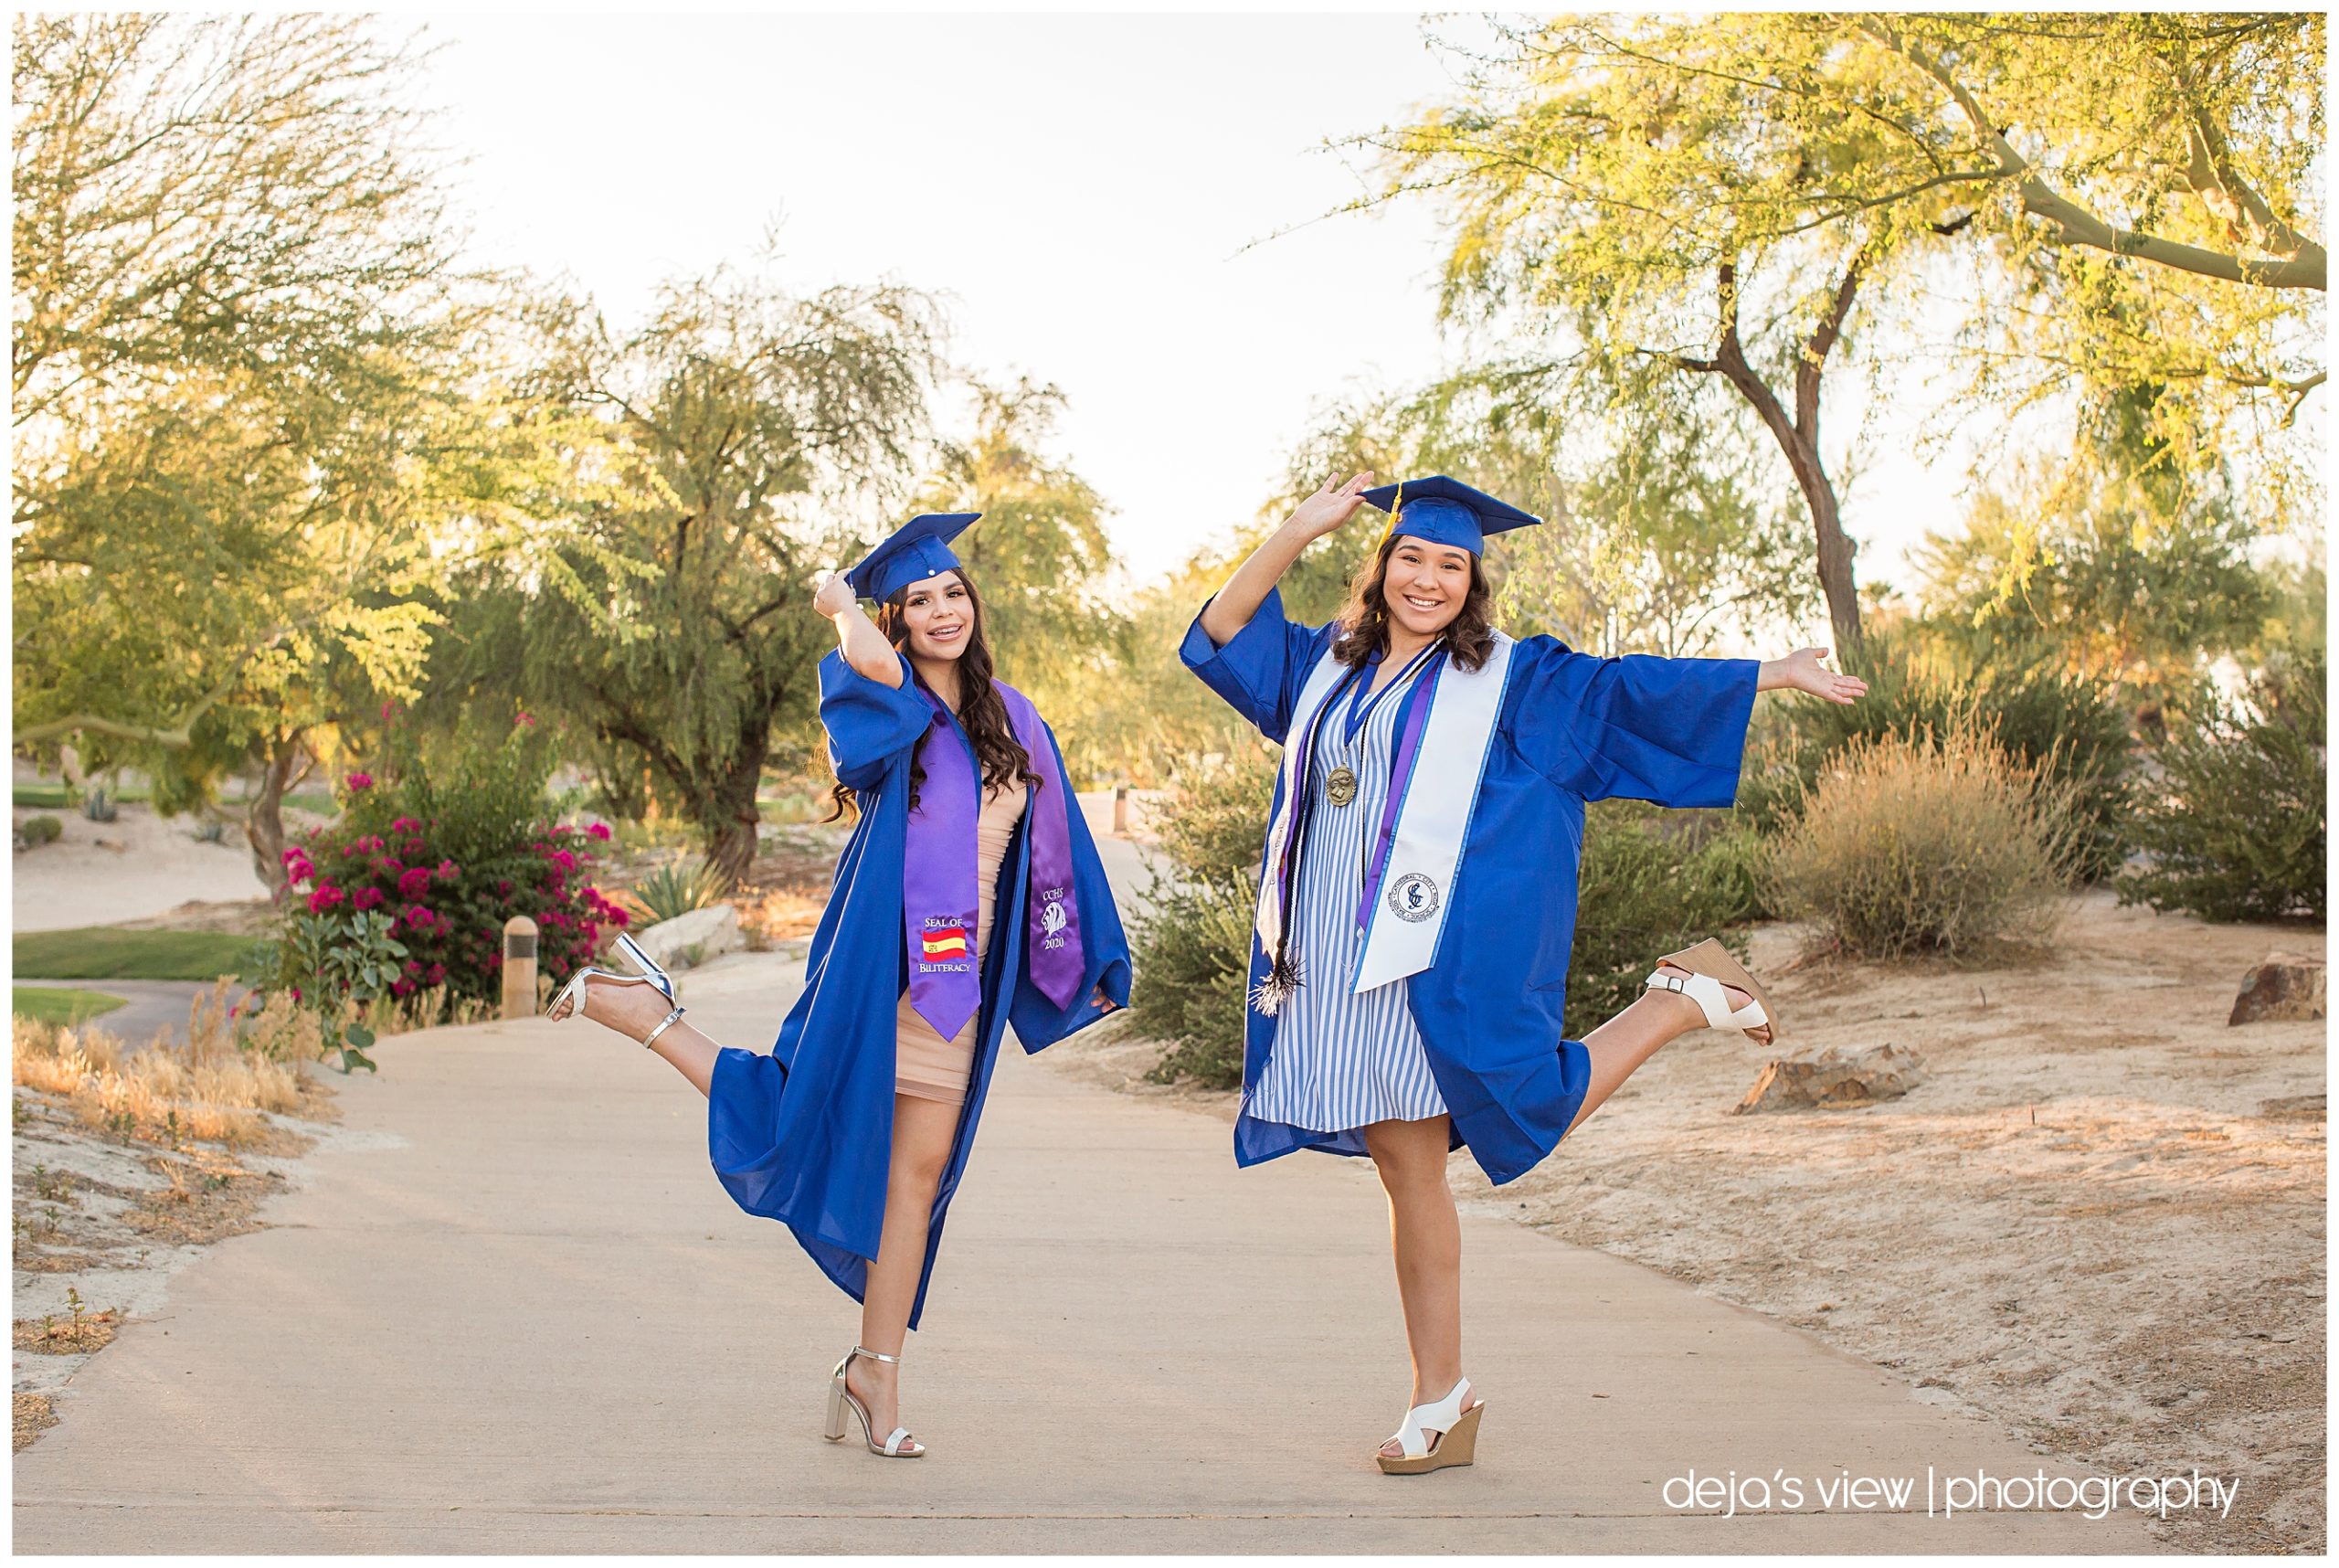 Graduation cap throwing in Rancho Mirage